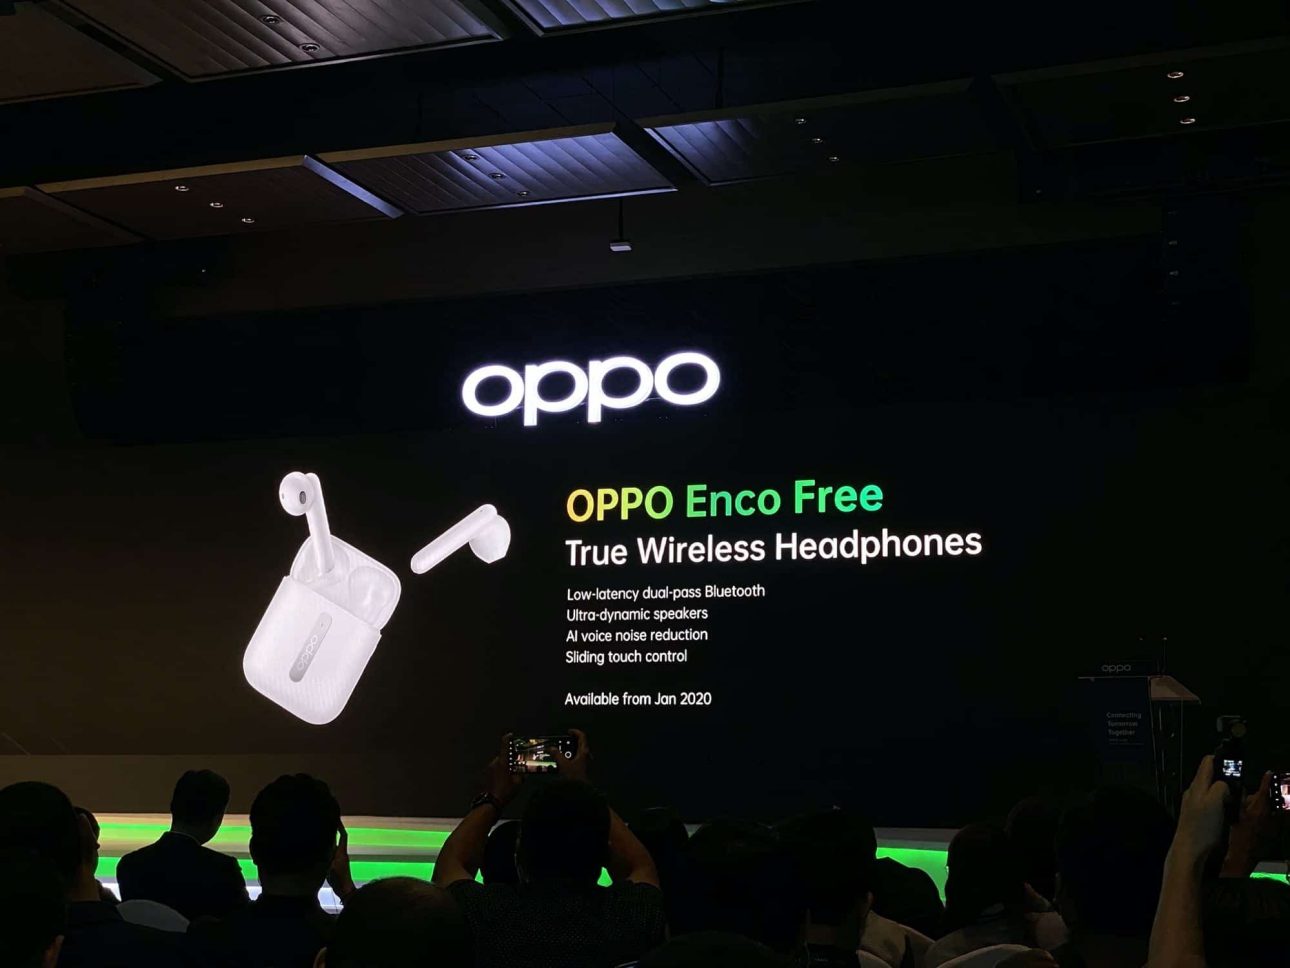 สรุปเรื่องราวจากงาน OPPO APAC Strategy Launch ณ ประเทศมาเลเซีย 39